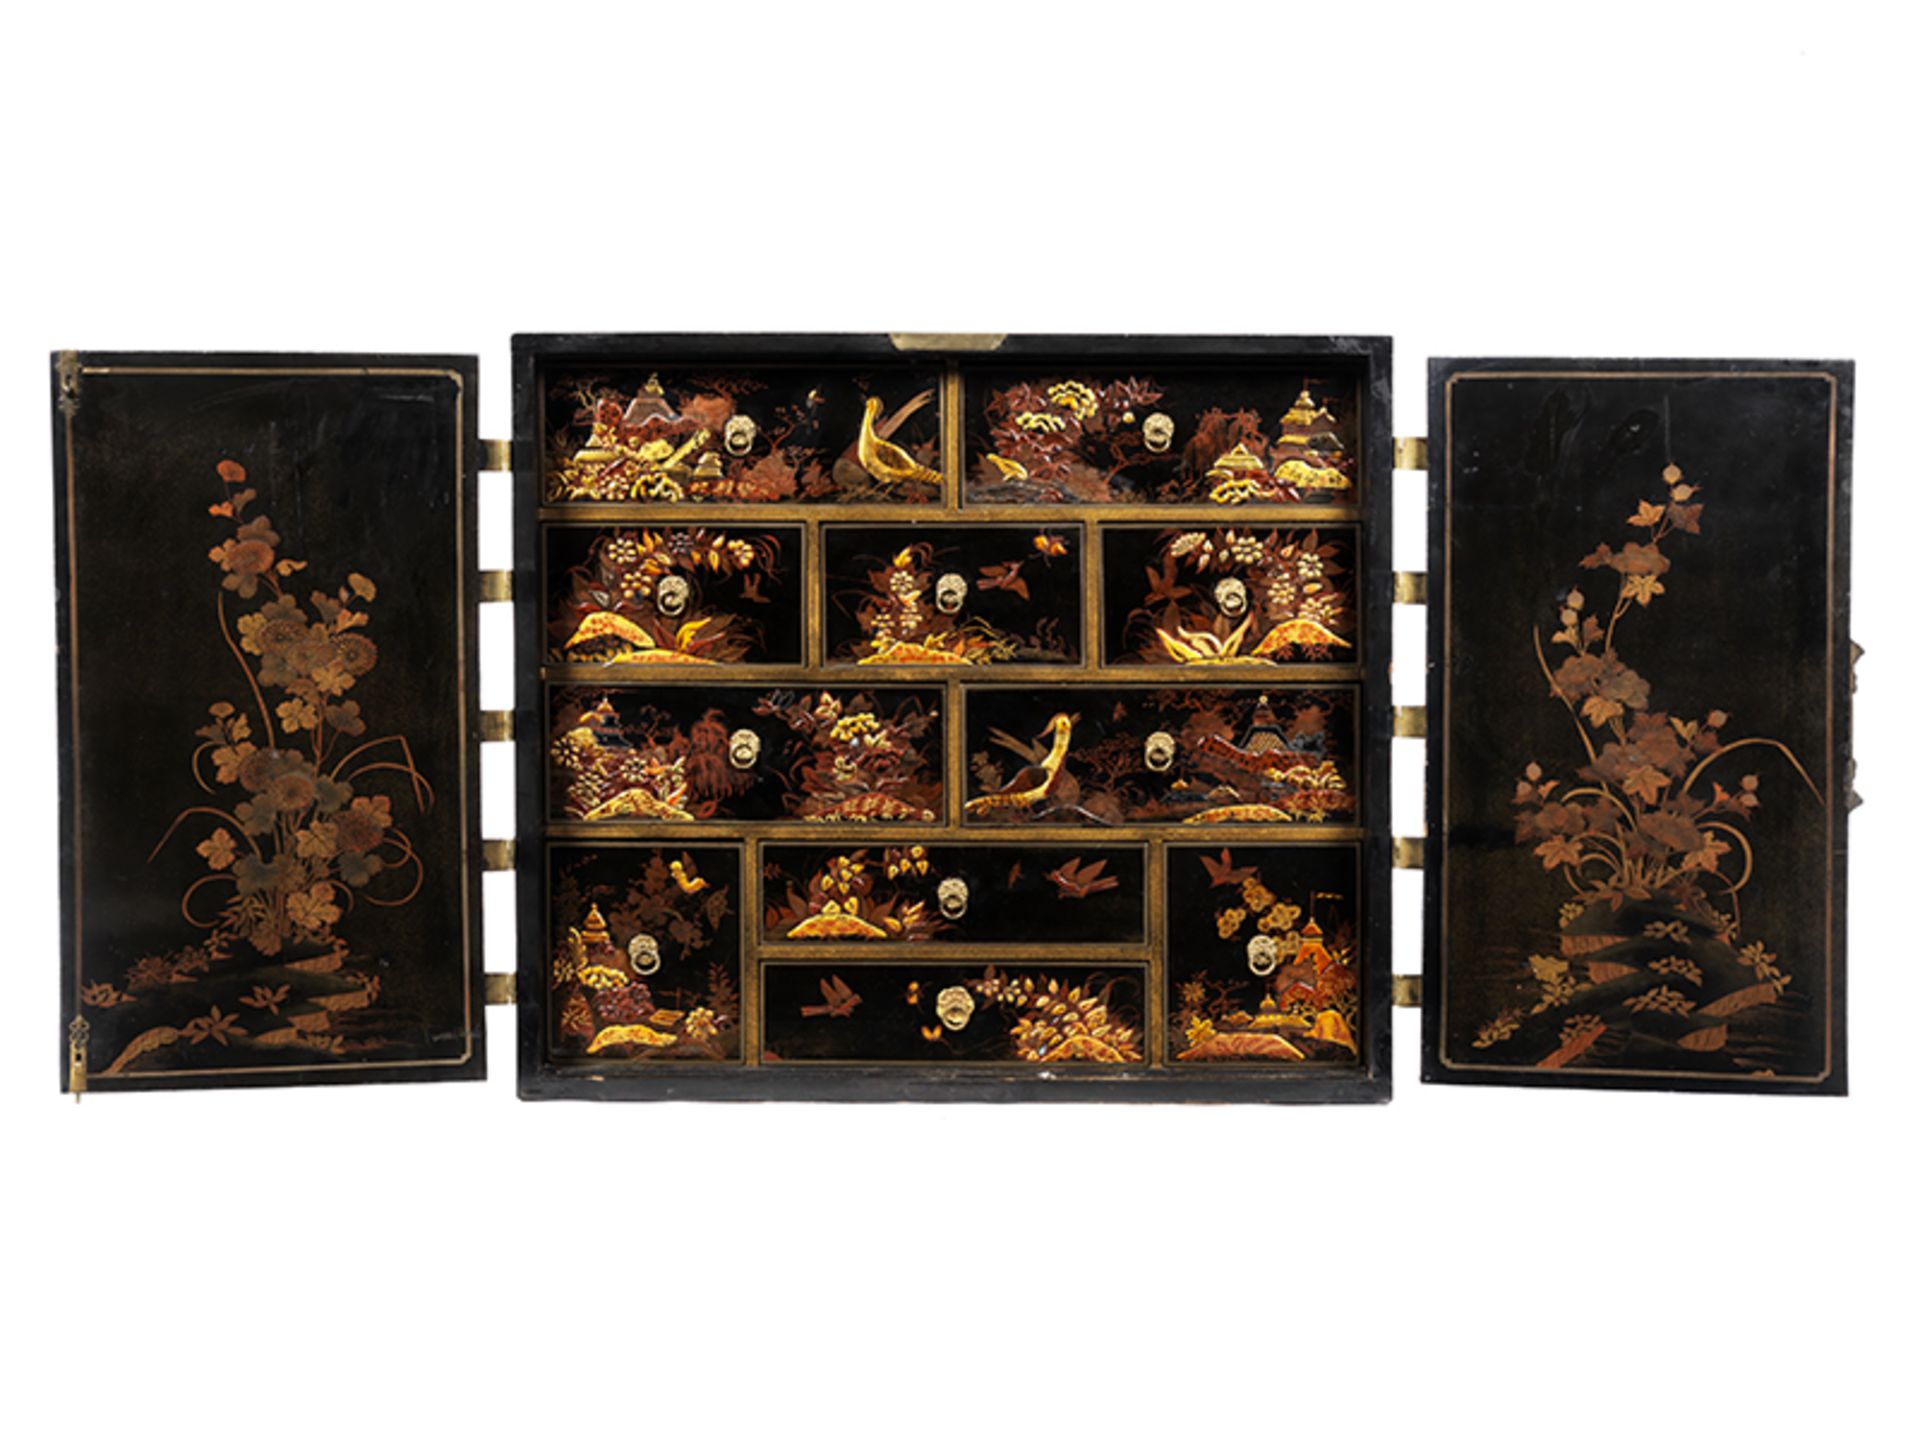 Japanischer Kabinettschrank Höhe: 83 cm. Breite: 94 cm. Tiefe: 47 cm. Japan, 18. Jahrhundert.